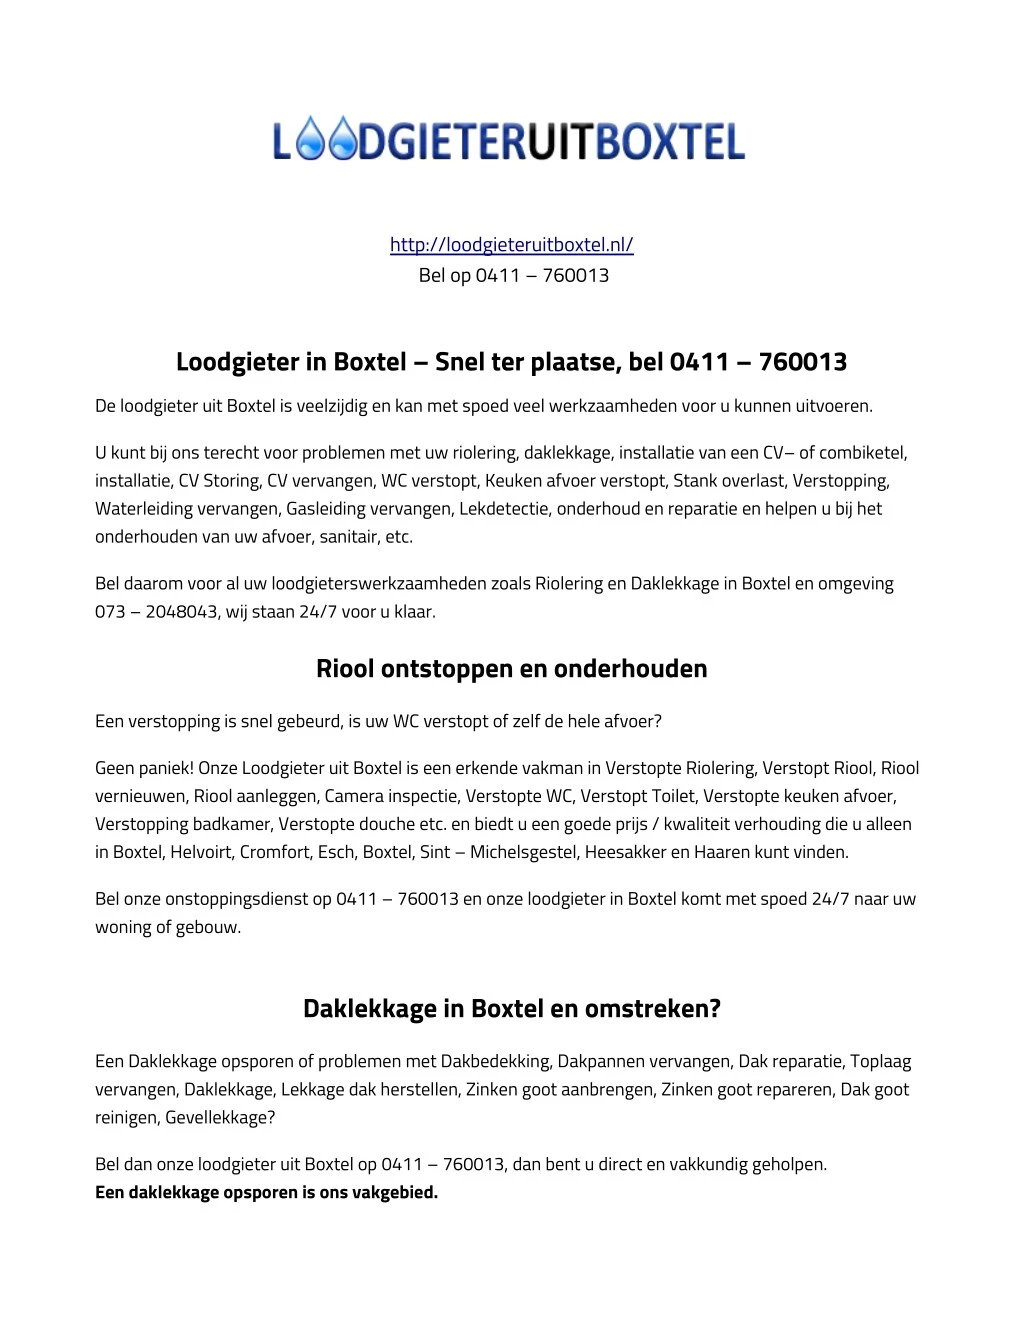 http loodgieteruitboxtel nl bel op 0411 760013